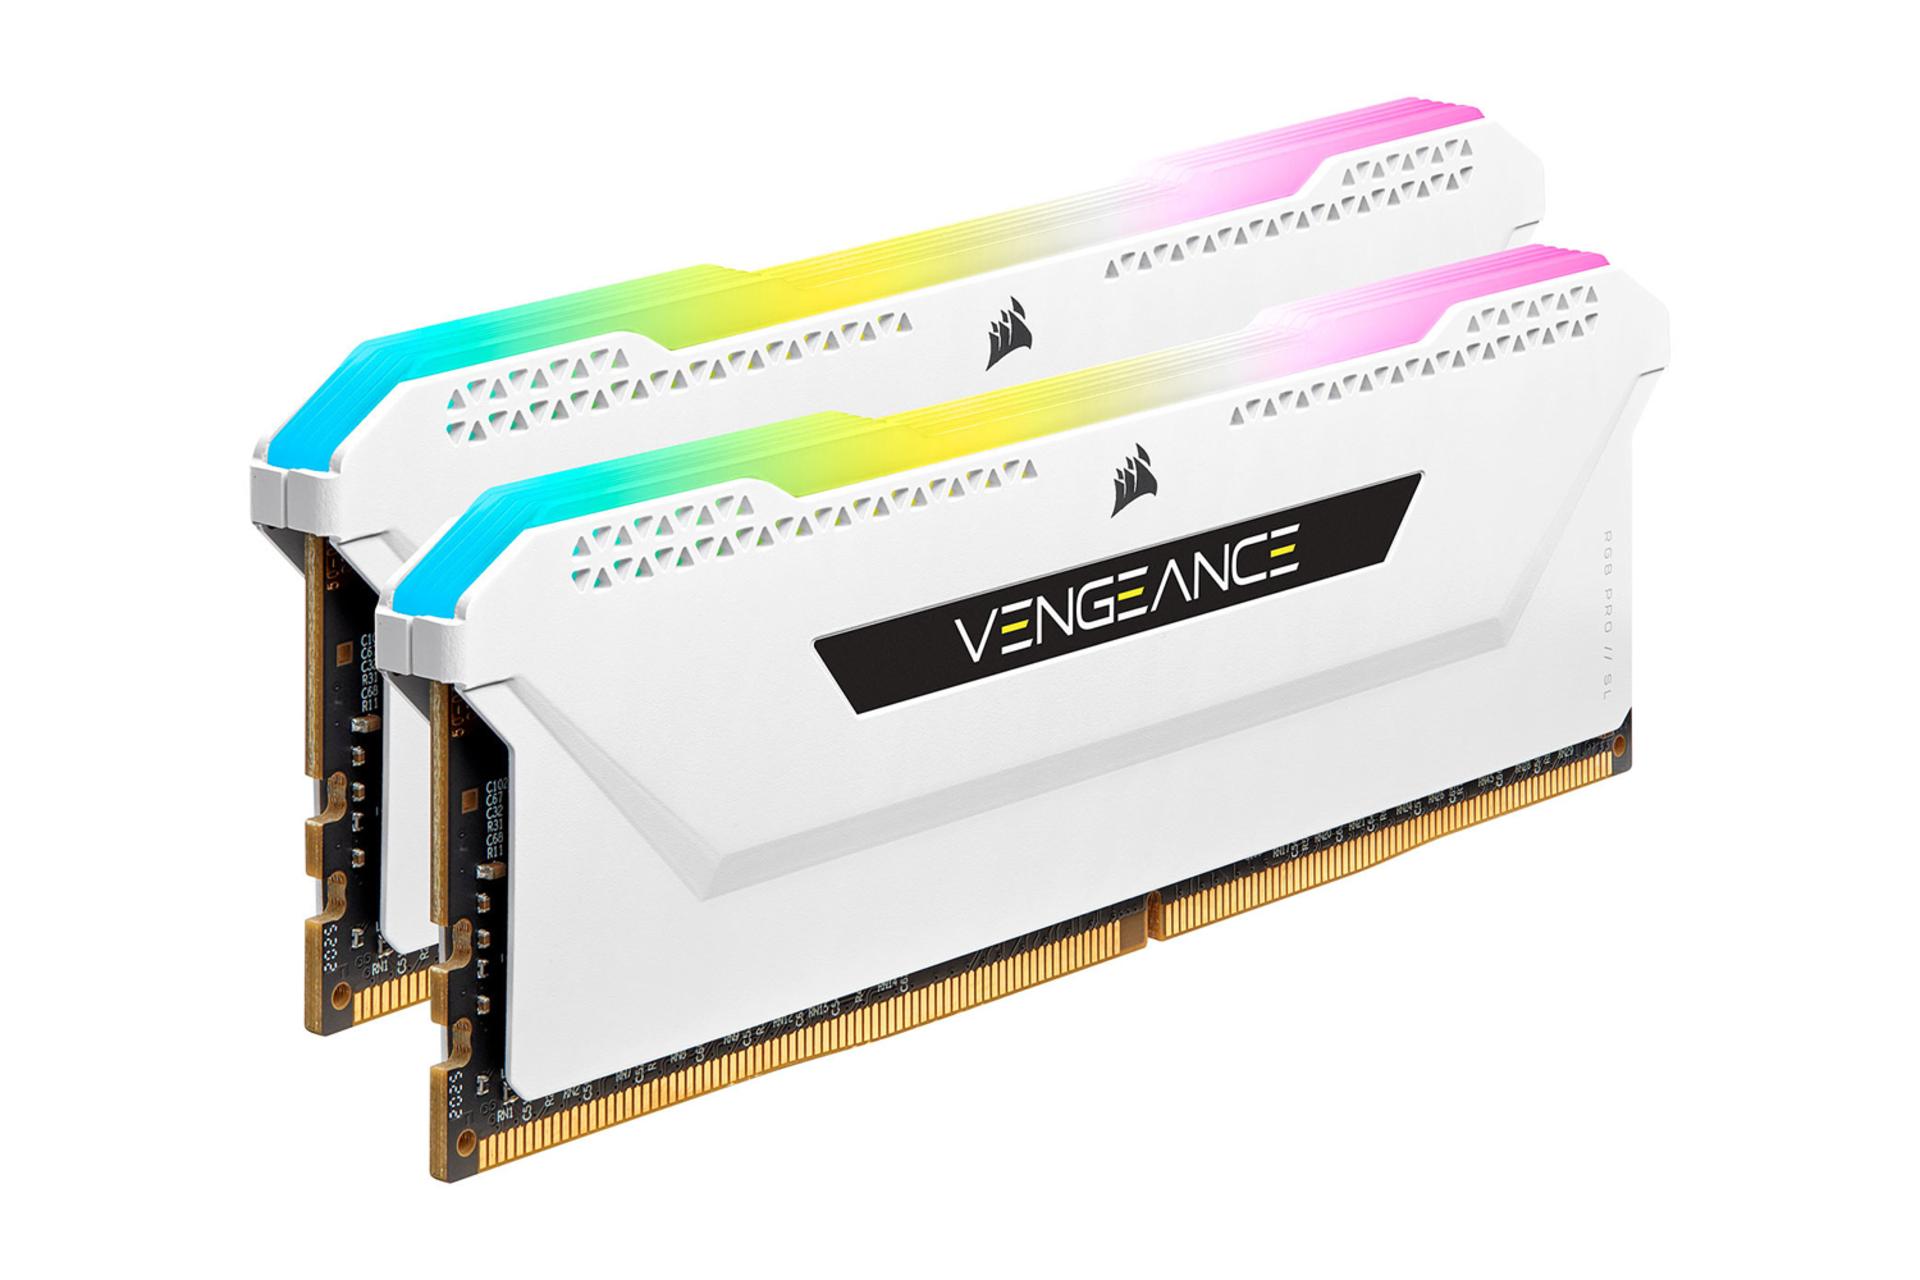 حافظه رم کورسیر VENGEANCE RGB PRO SL ظرفیت 64 گیگابایت (2x32) از نوع DDR4-3200 نمای جانبی سفید